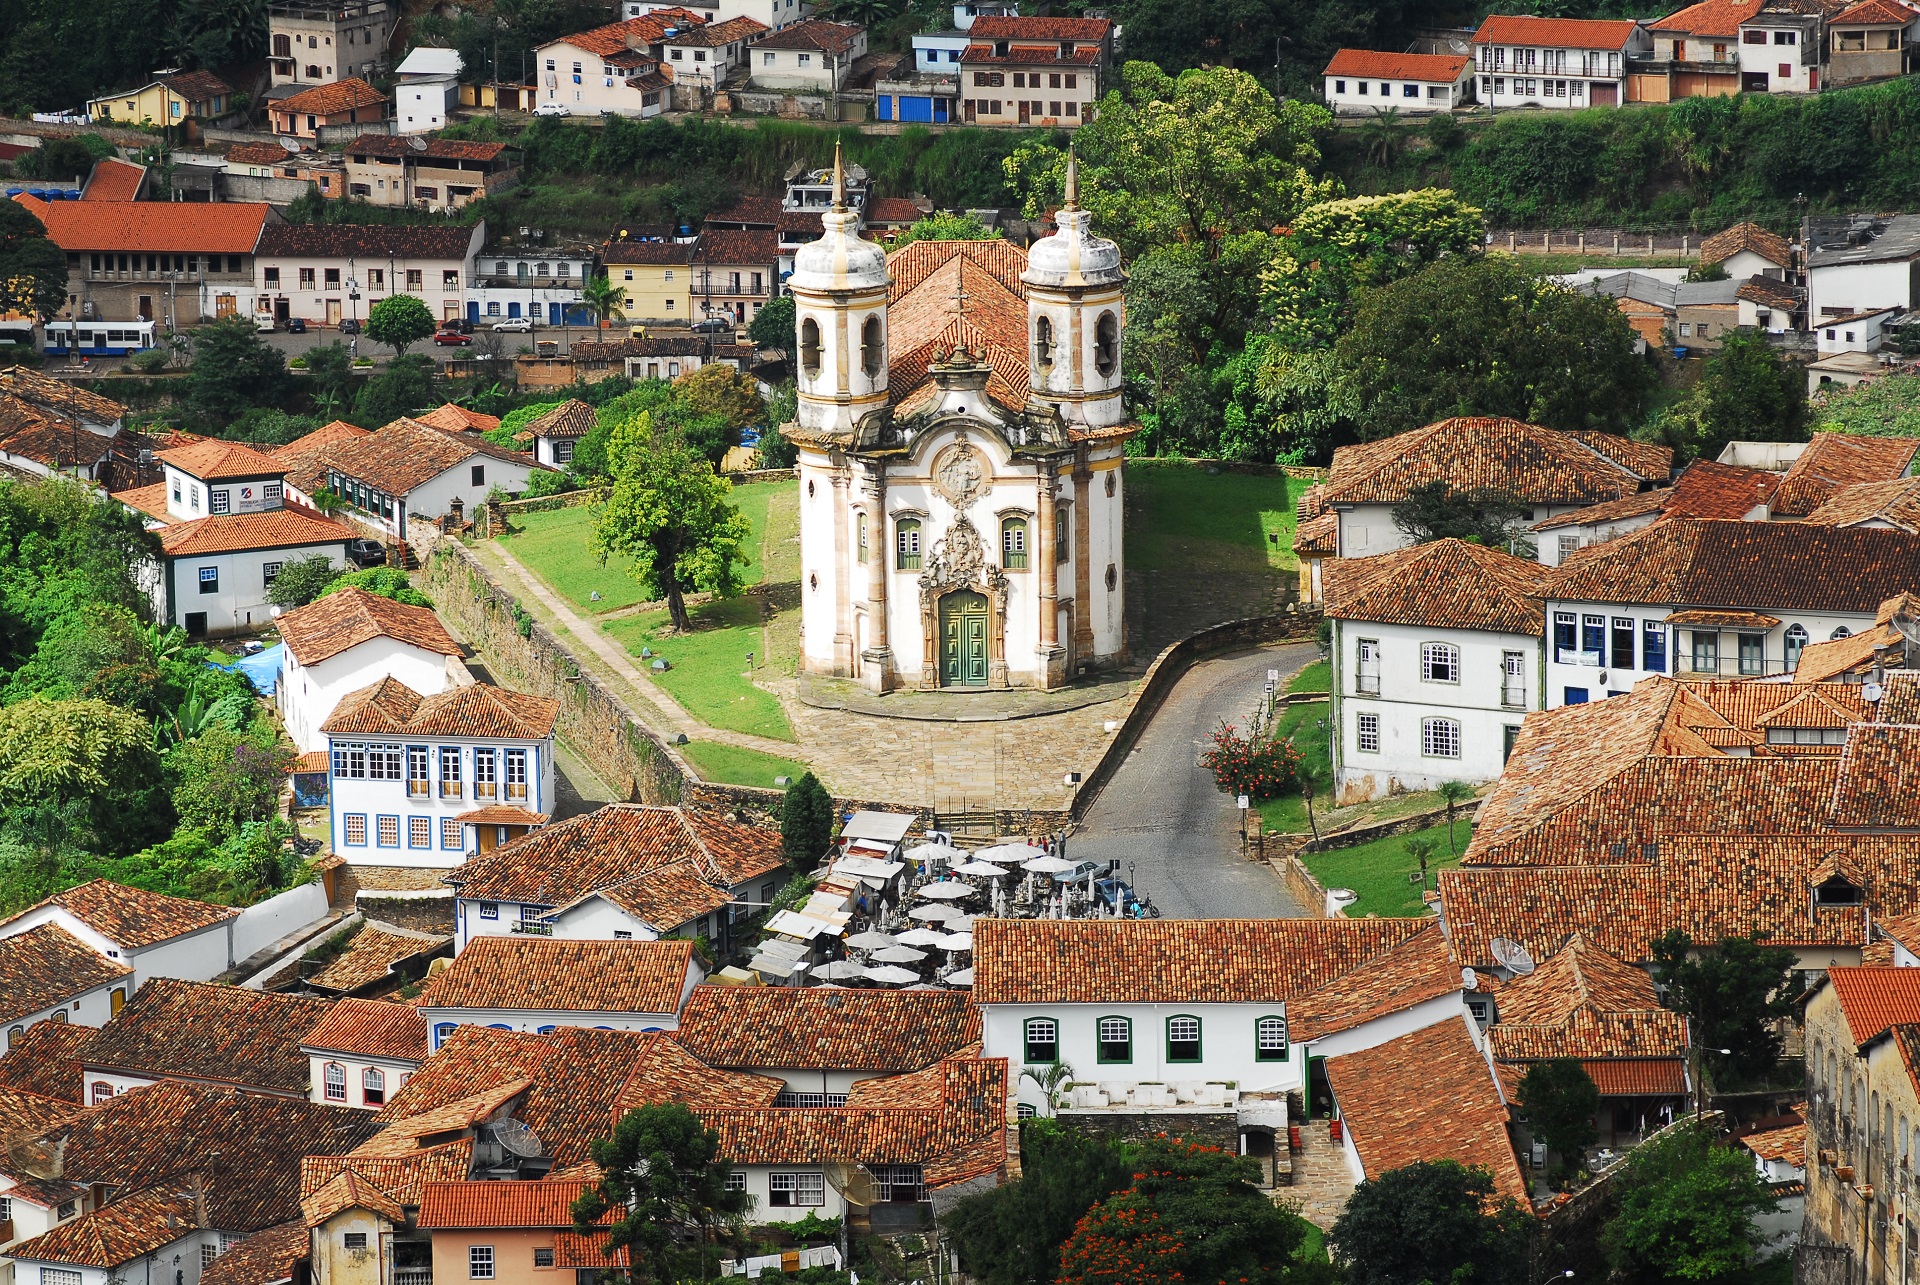 Título de Monumento Nacional conferido à Estrada Real evidencia os patrimônios históricos de Minas Gerais